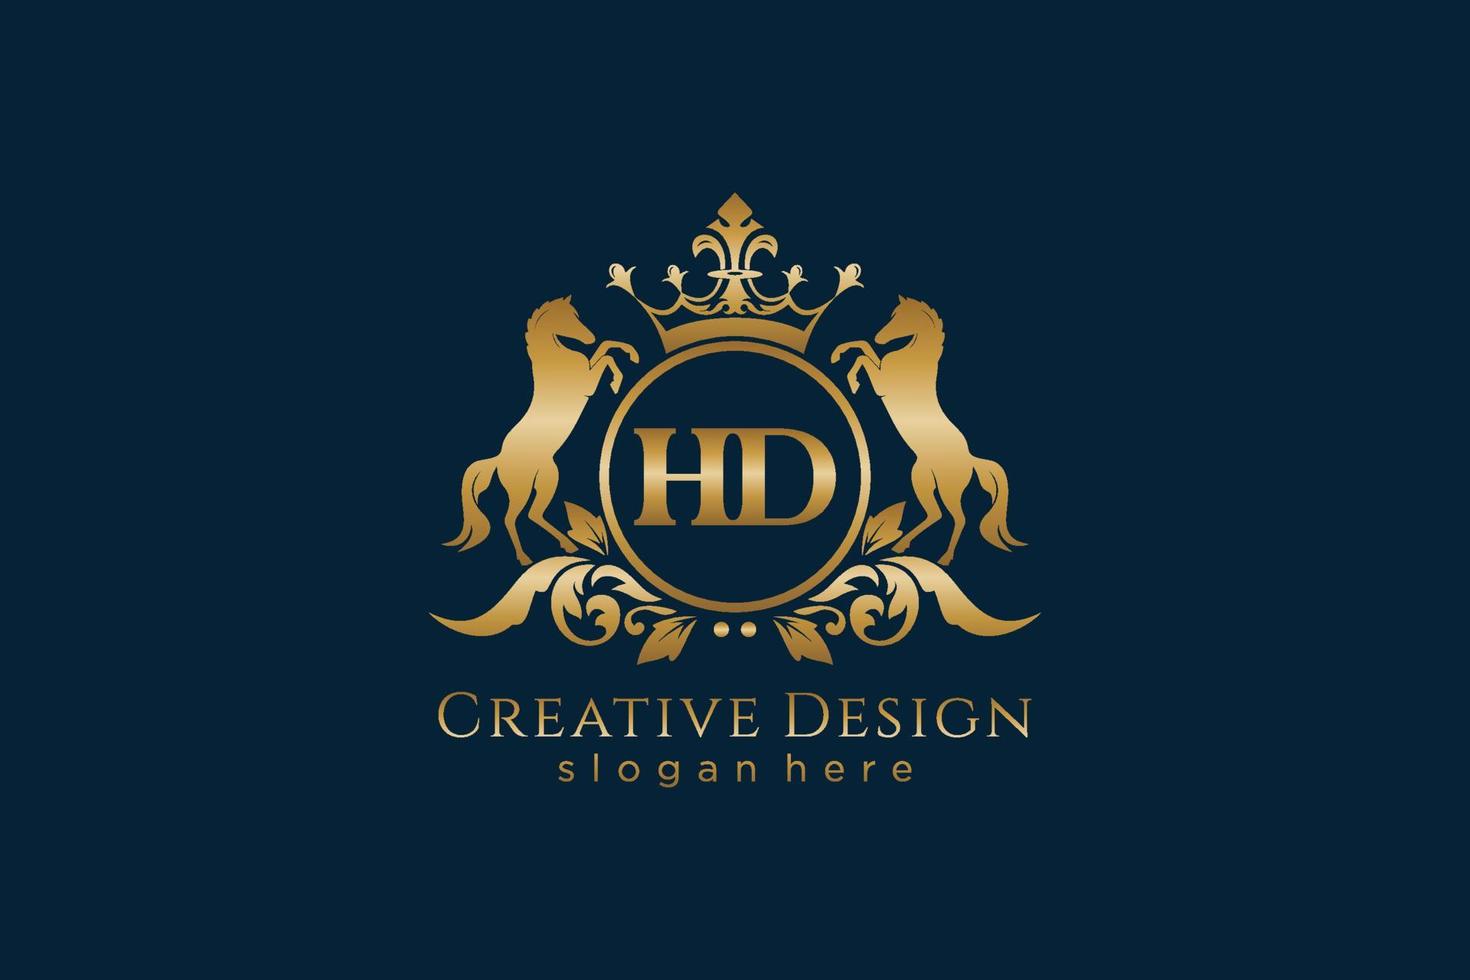 cresta dorada retro hd inicial con círculo y dos caballos, plantilla de insignia con pergaminos y corona real - perfecto para proyectos de marca de lujo vector